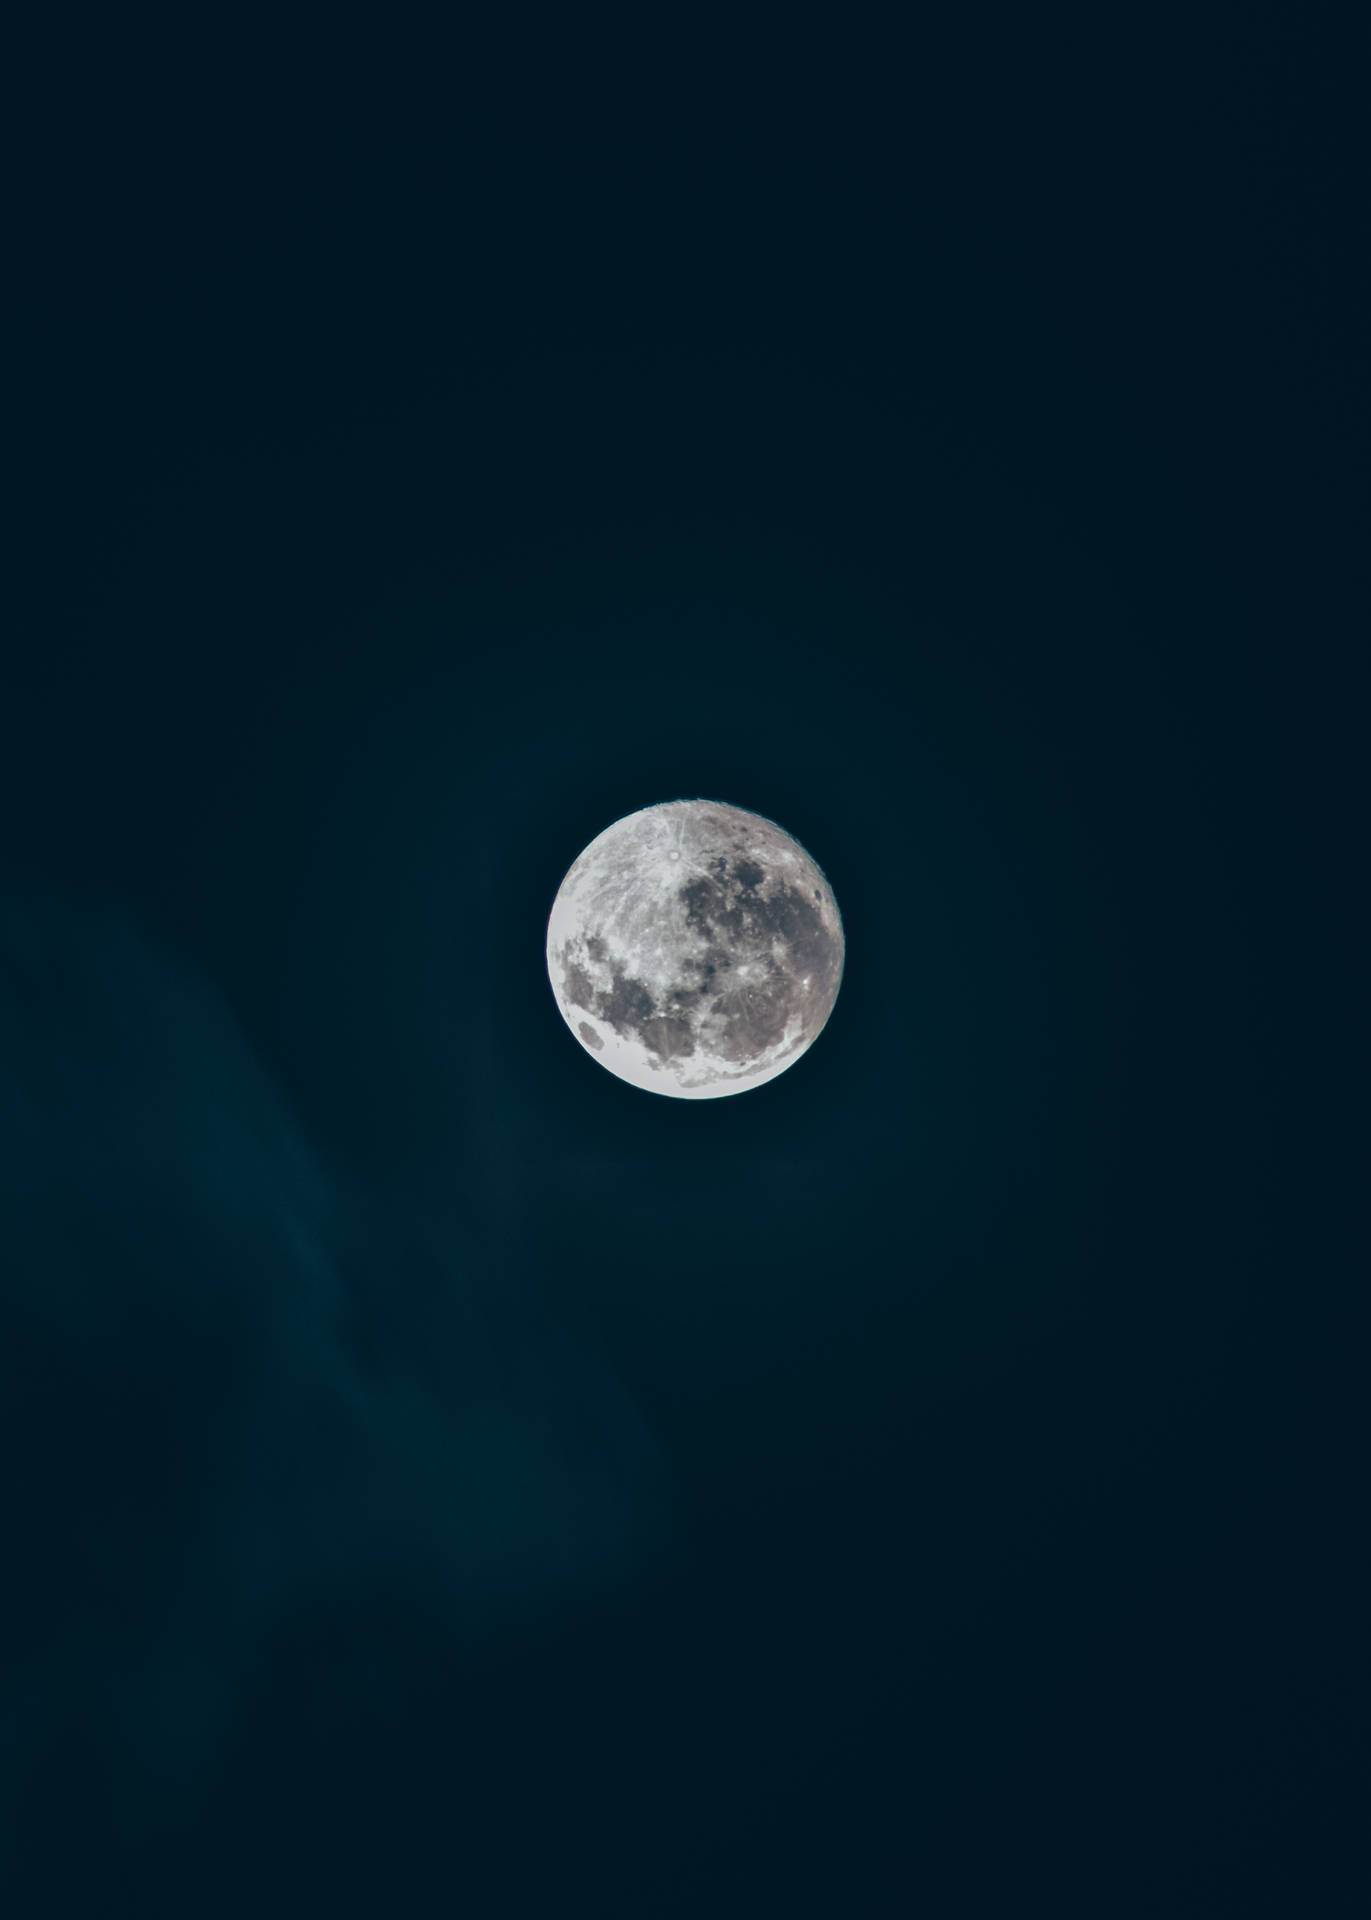 Beautiful Full Moon Clear Night Sky Wallpaper